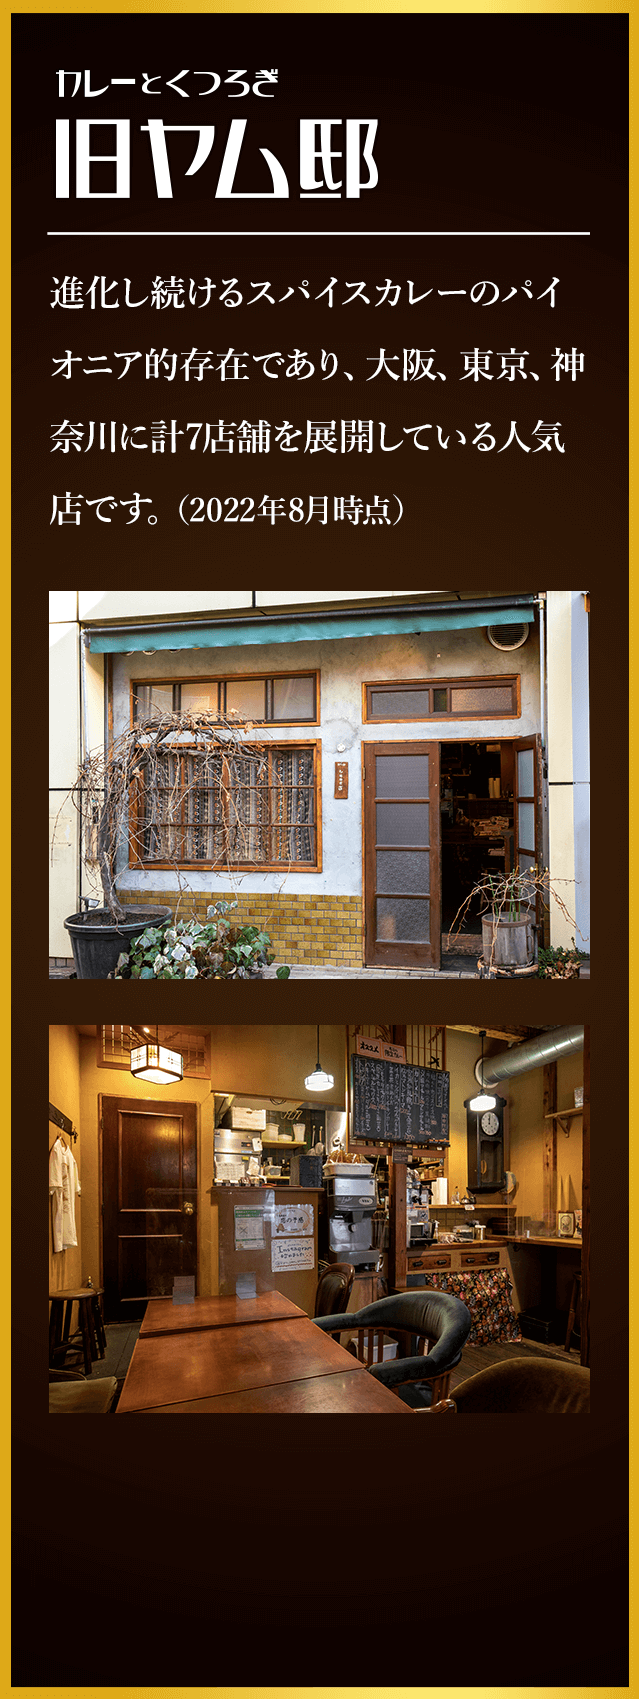 カレーとくつろぎ 旧ヤム邸 進化し続けるスパイスカレーのパイオニア的存在であり、大阪、東京、神奈川に計7店舗を展開している人気店です。（2022年2月時点）